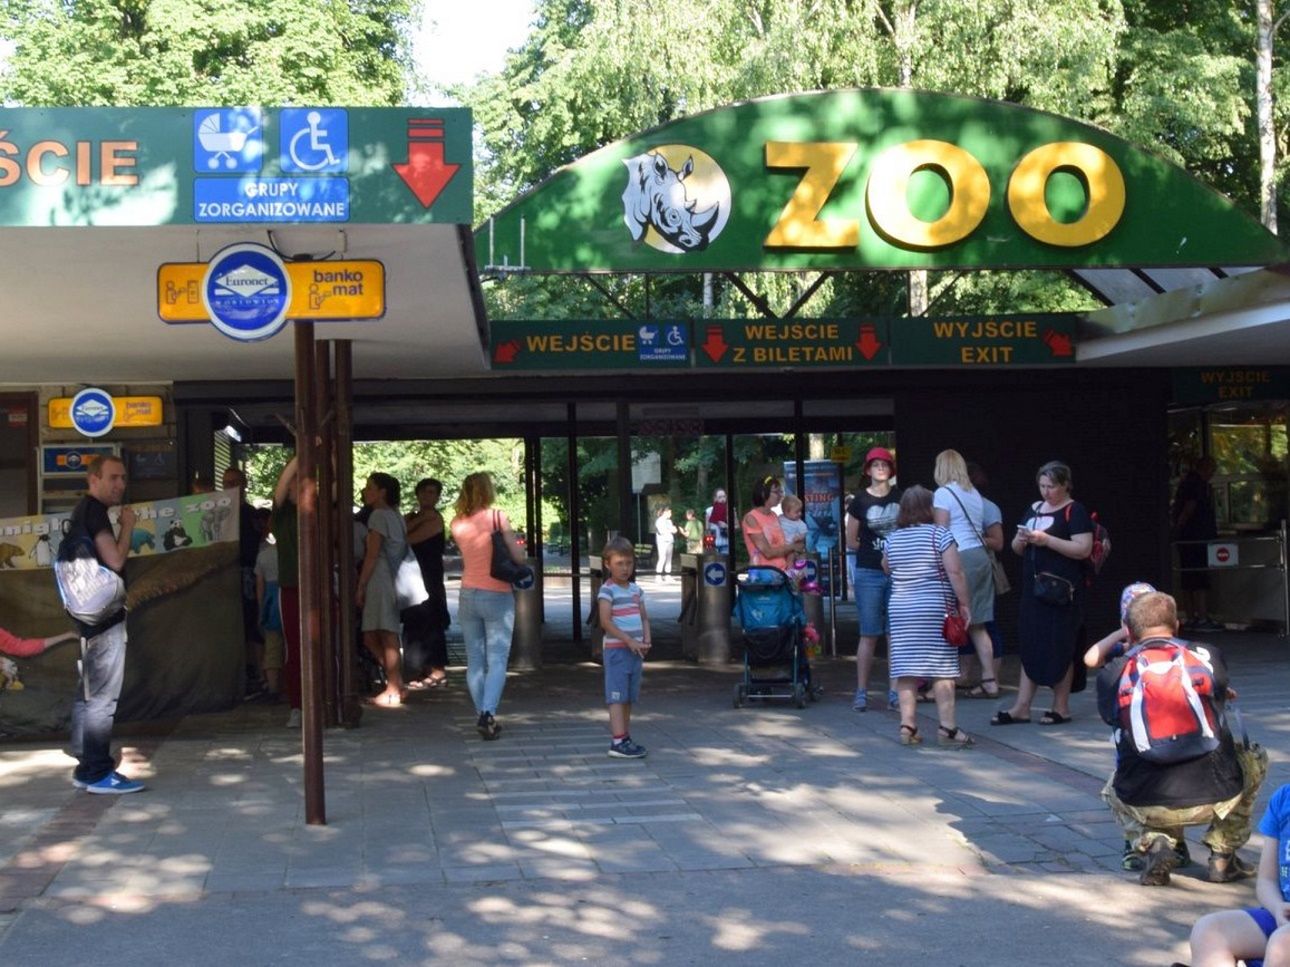 Skandal w Poznaniu. Do zoo nie wpuszczono chorego 2-latka. Dyrekcja się tłumaczy